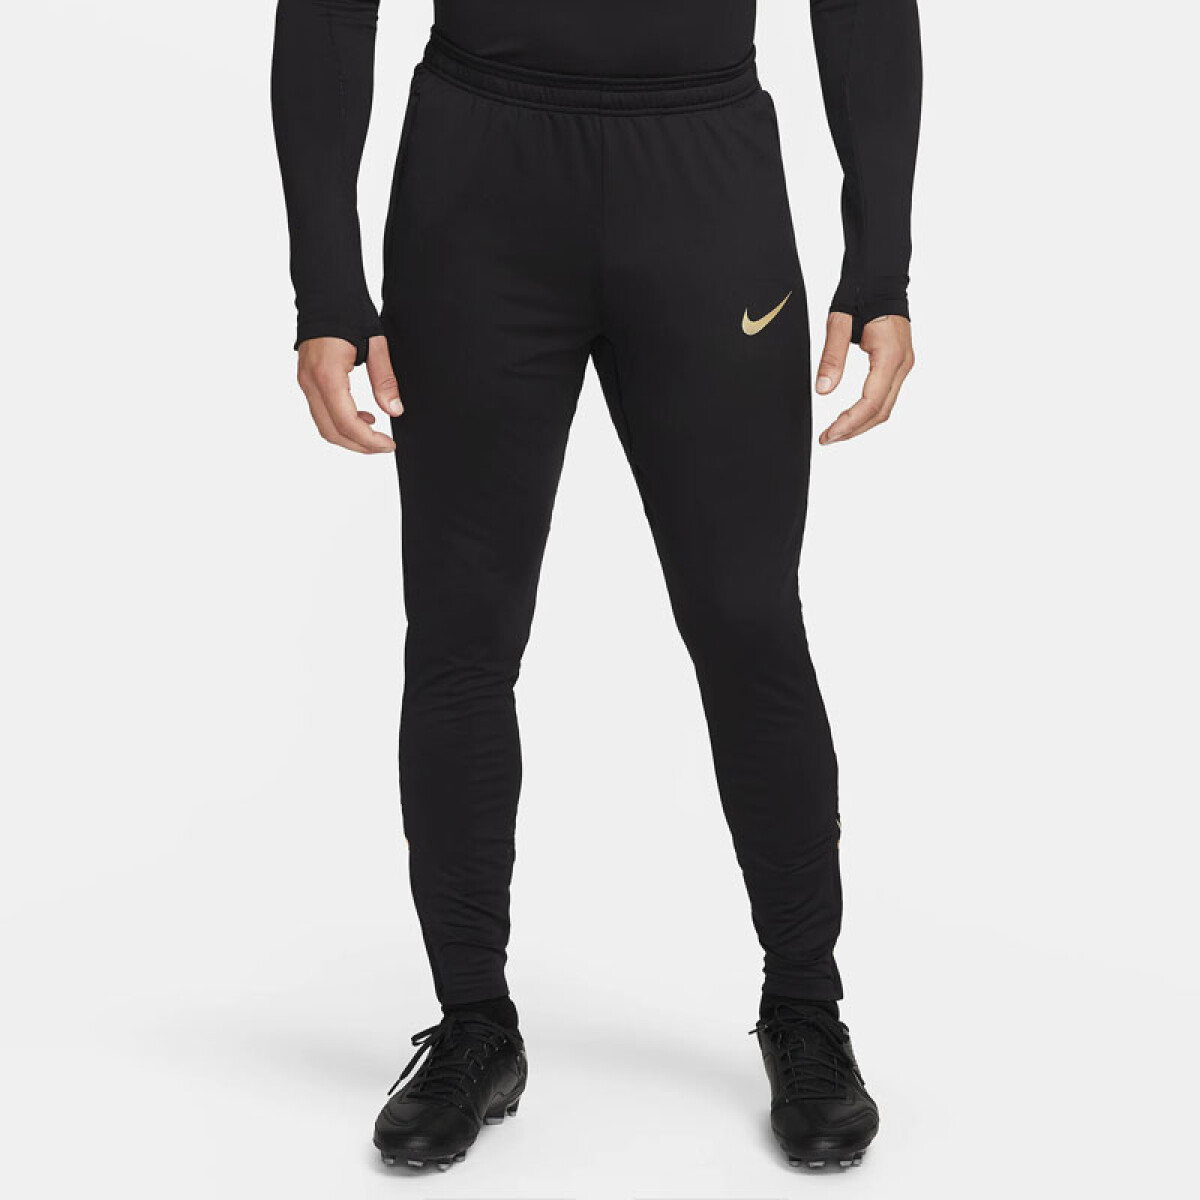 Pantalon Nike Dri-fit Strike 